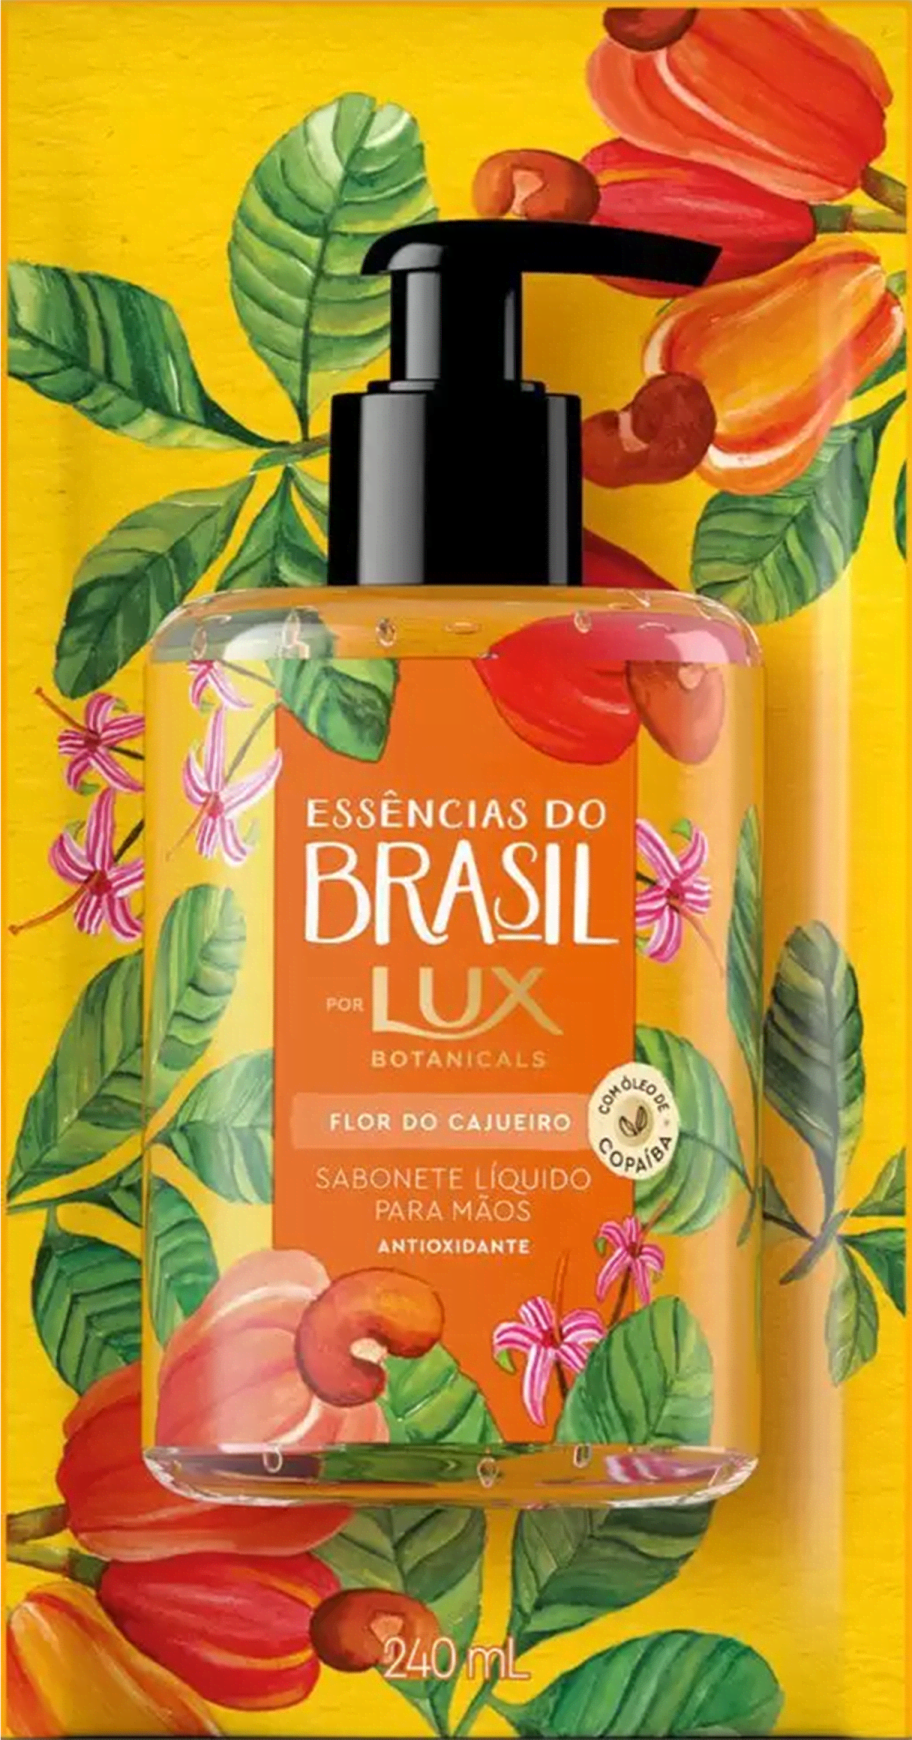 Sabonete Líquido Lux Botanicals Essências do Brasil para Mãos